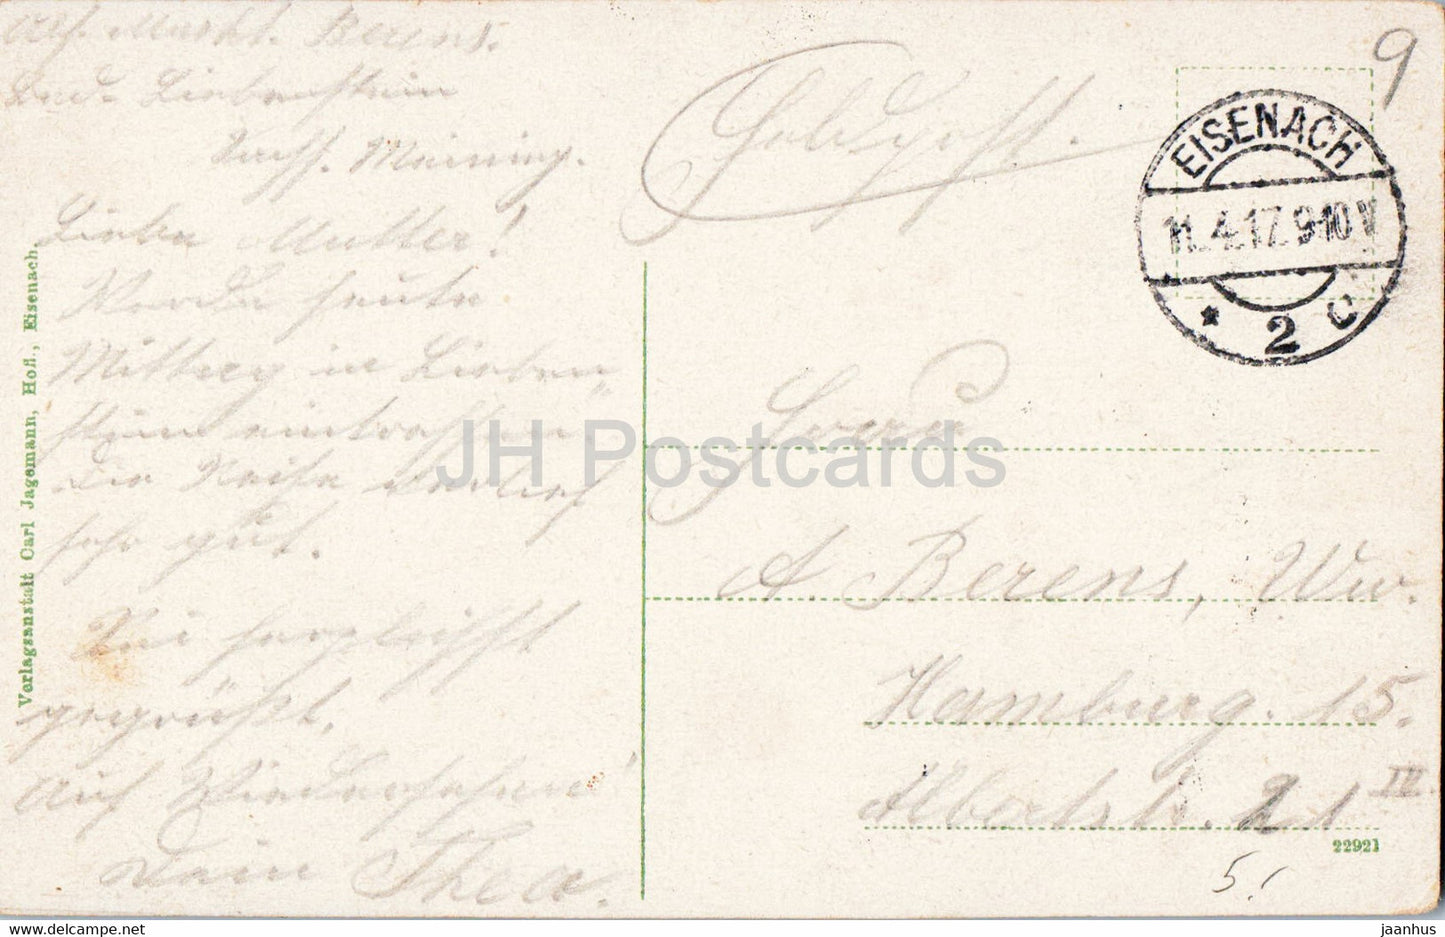 Eisenach - Das Lutherhaus - Feldpost - Militärpost - 22921 - alte Postkarte - 1917 - Deutschland - gebraucht